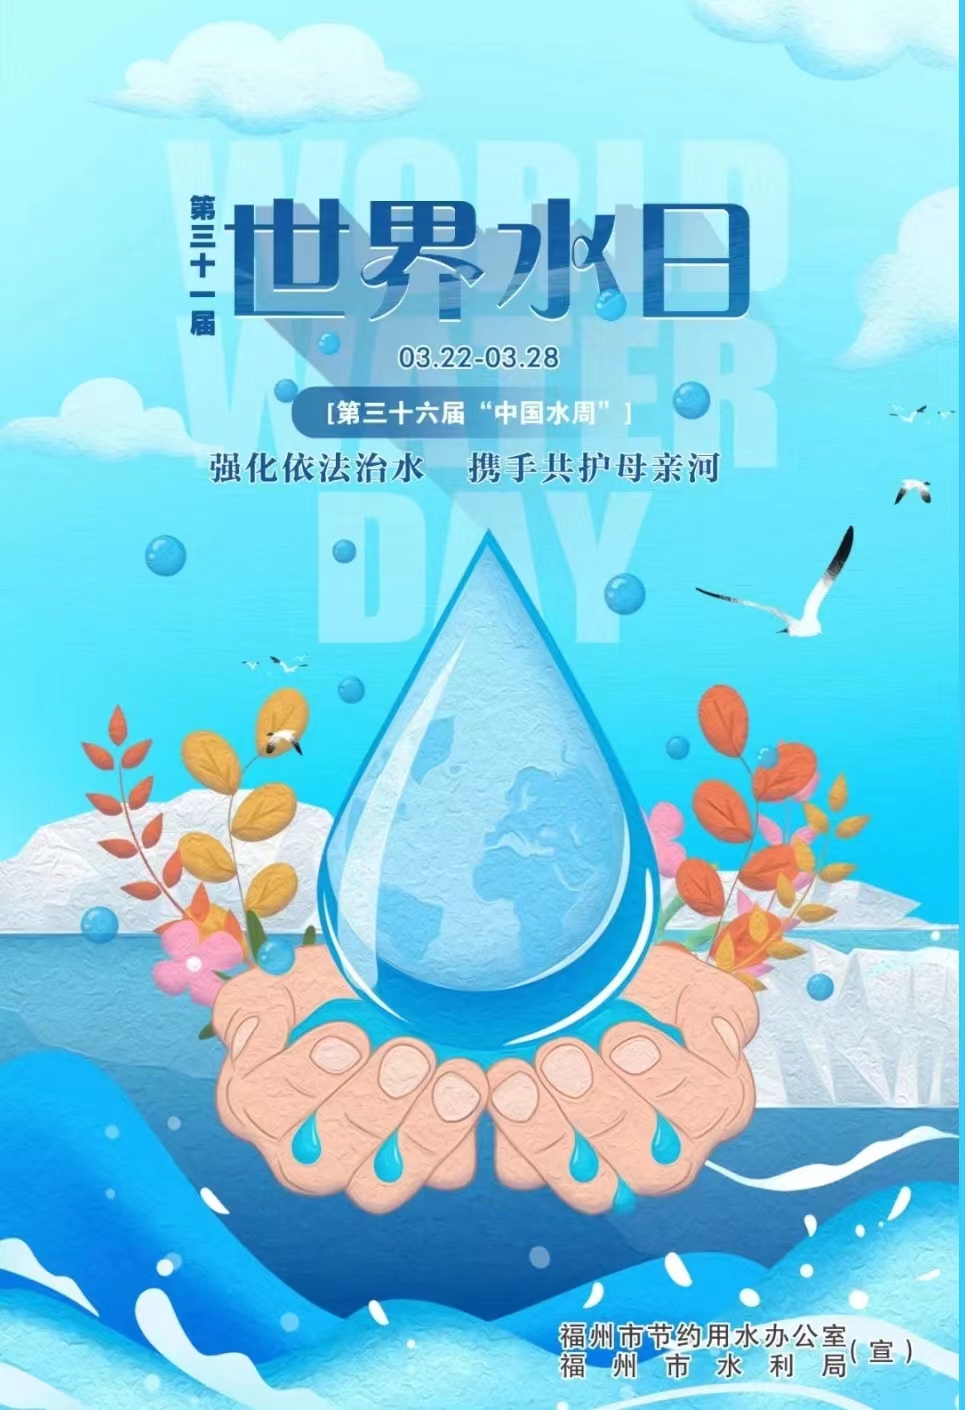 第三十六届“中国水周”“强化依法治水 携手共护母亲河”